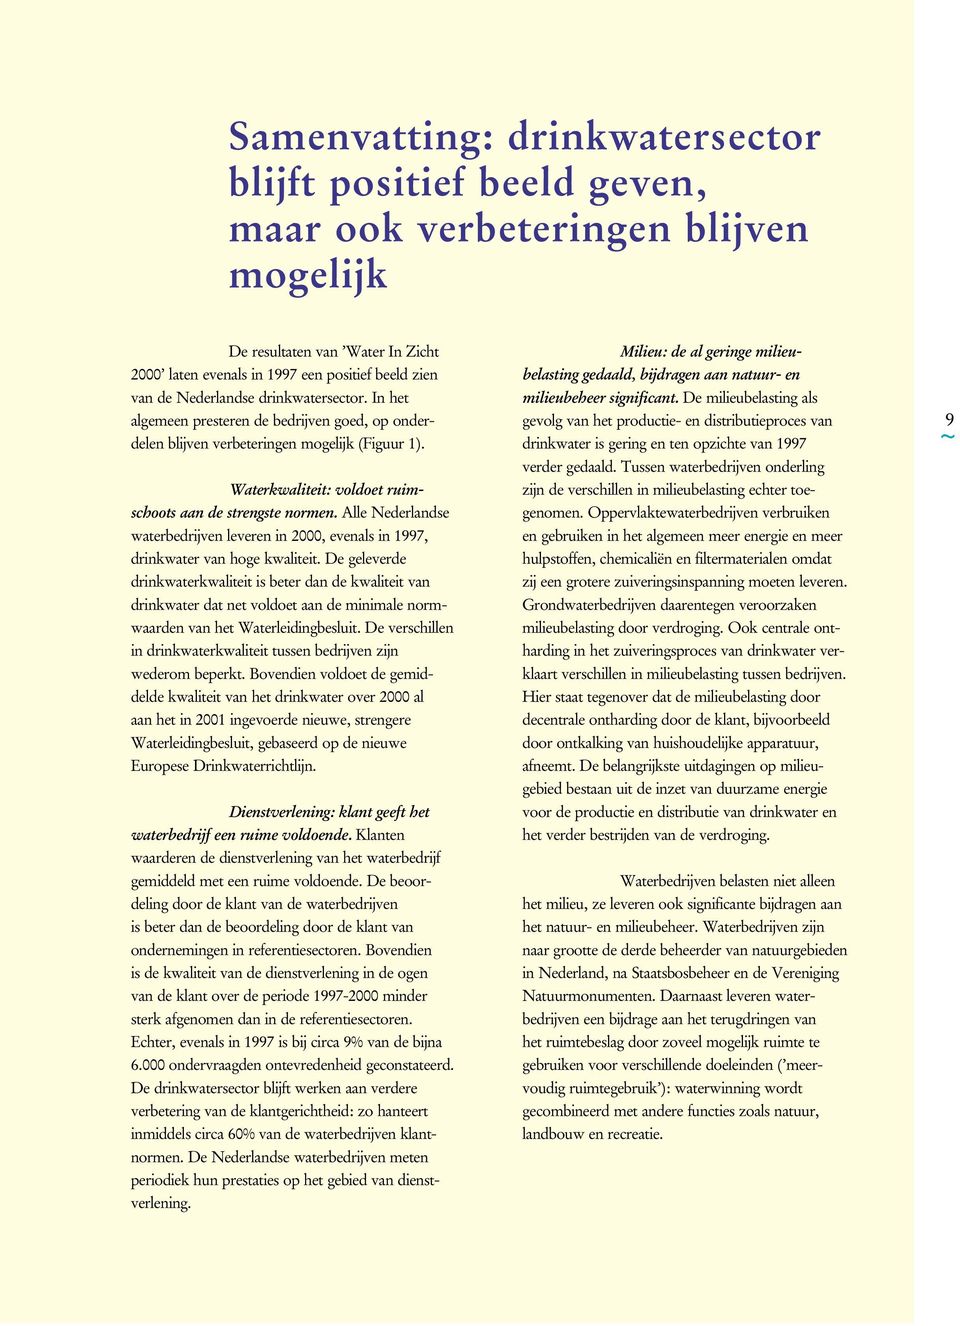 Alle Nederlandse waterbedrijven leveren in 2000, evenals in 1997, drinkwater van hoge kwaliteit.